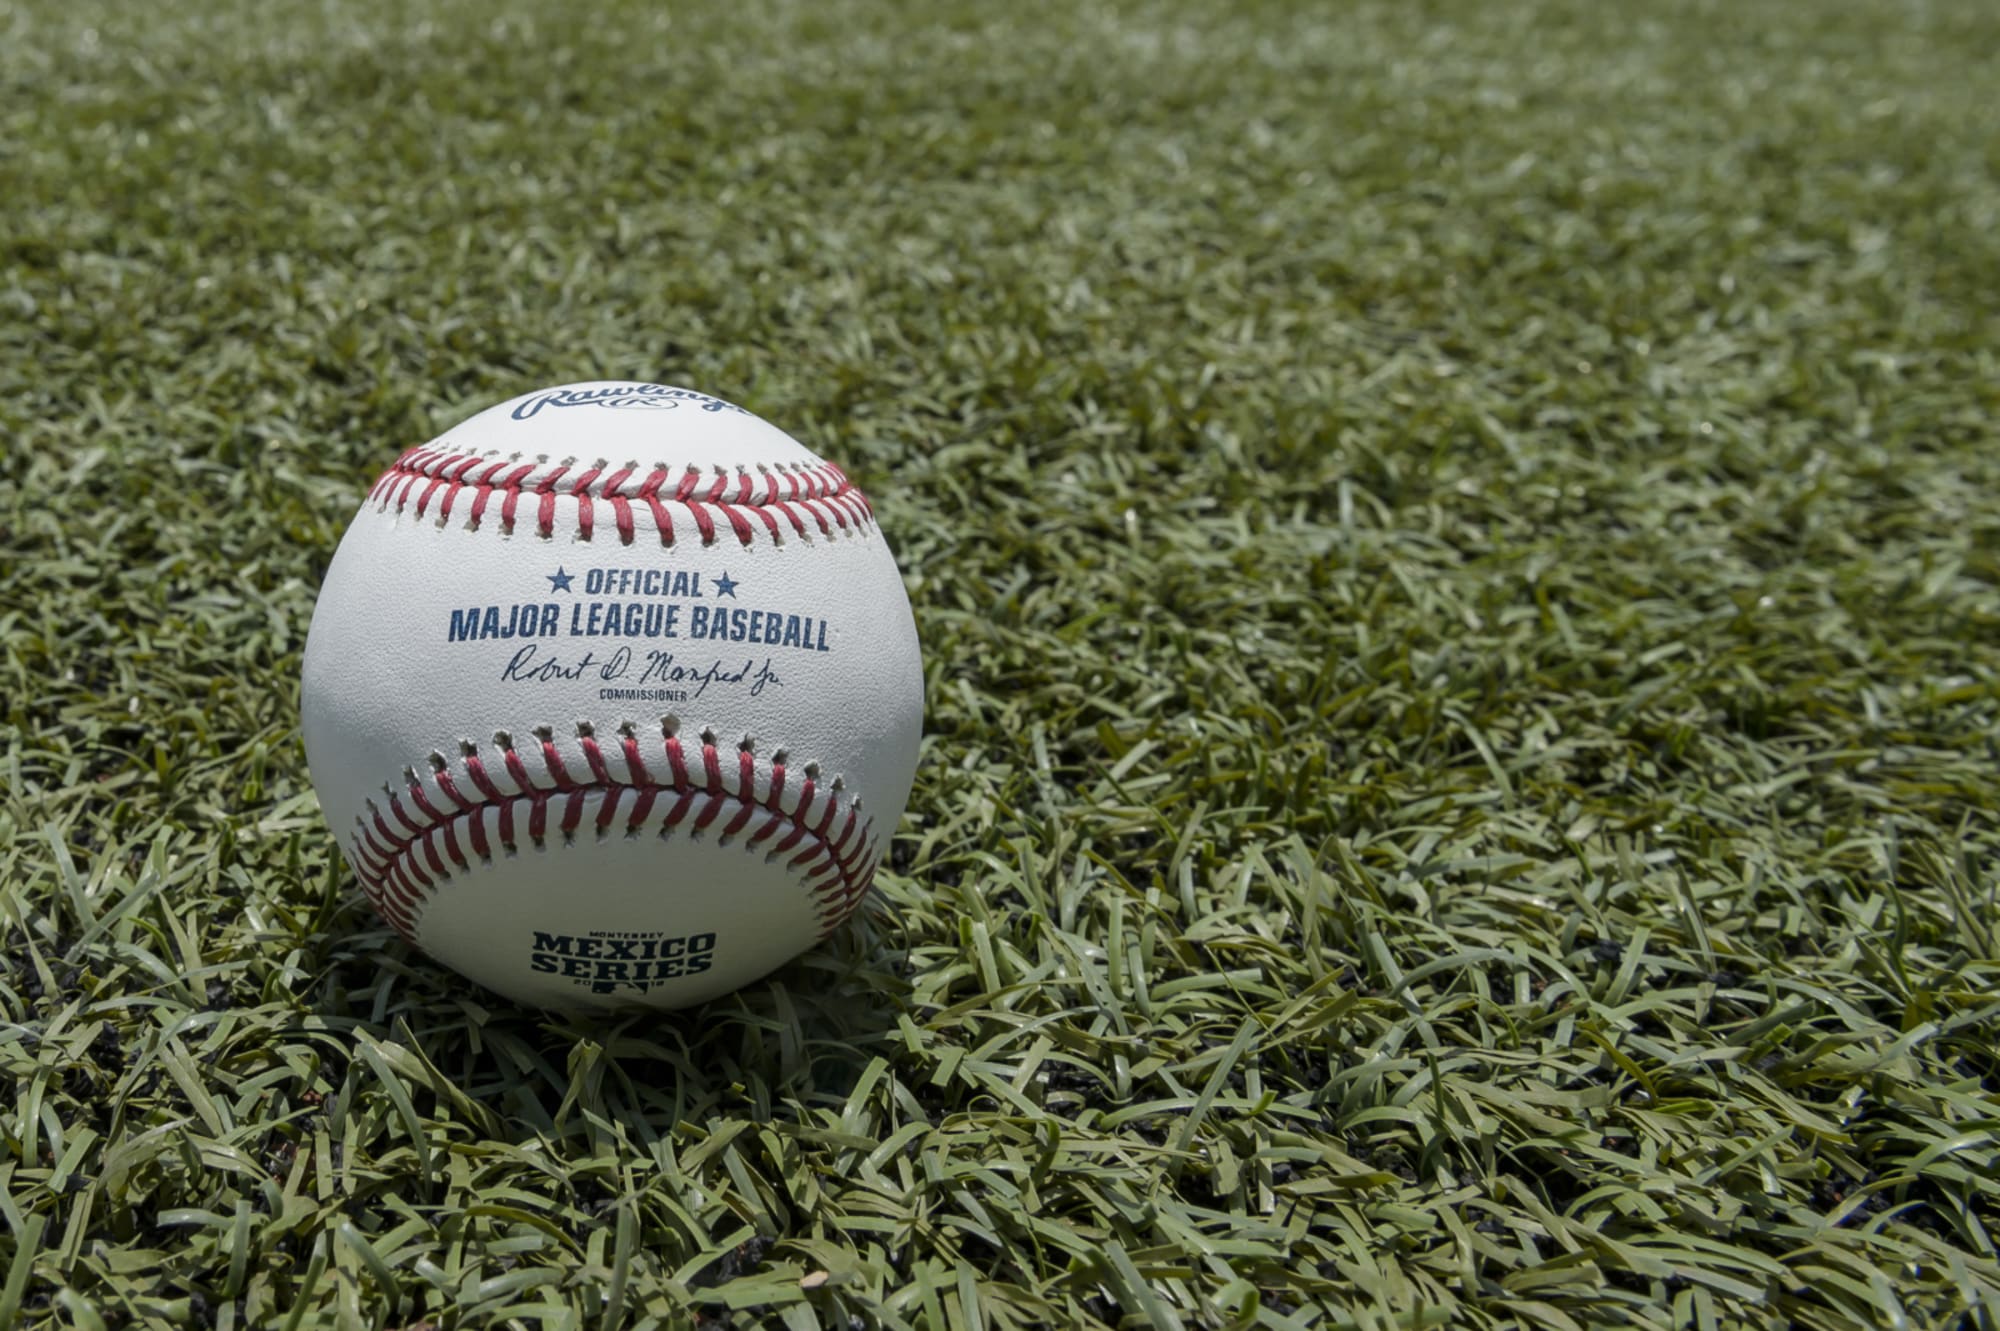 all leather, MLB/MILB baseballs 2 dozen used baseballs 